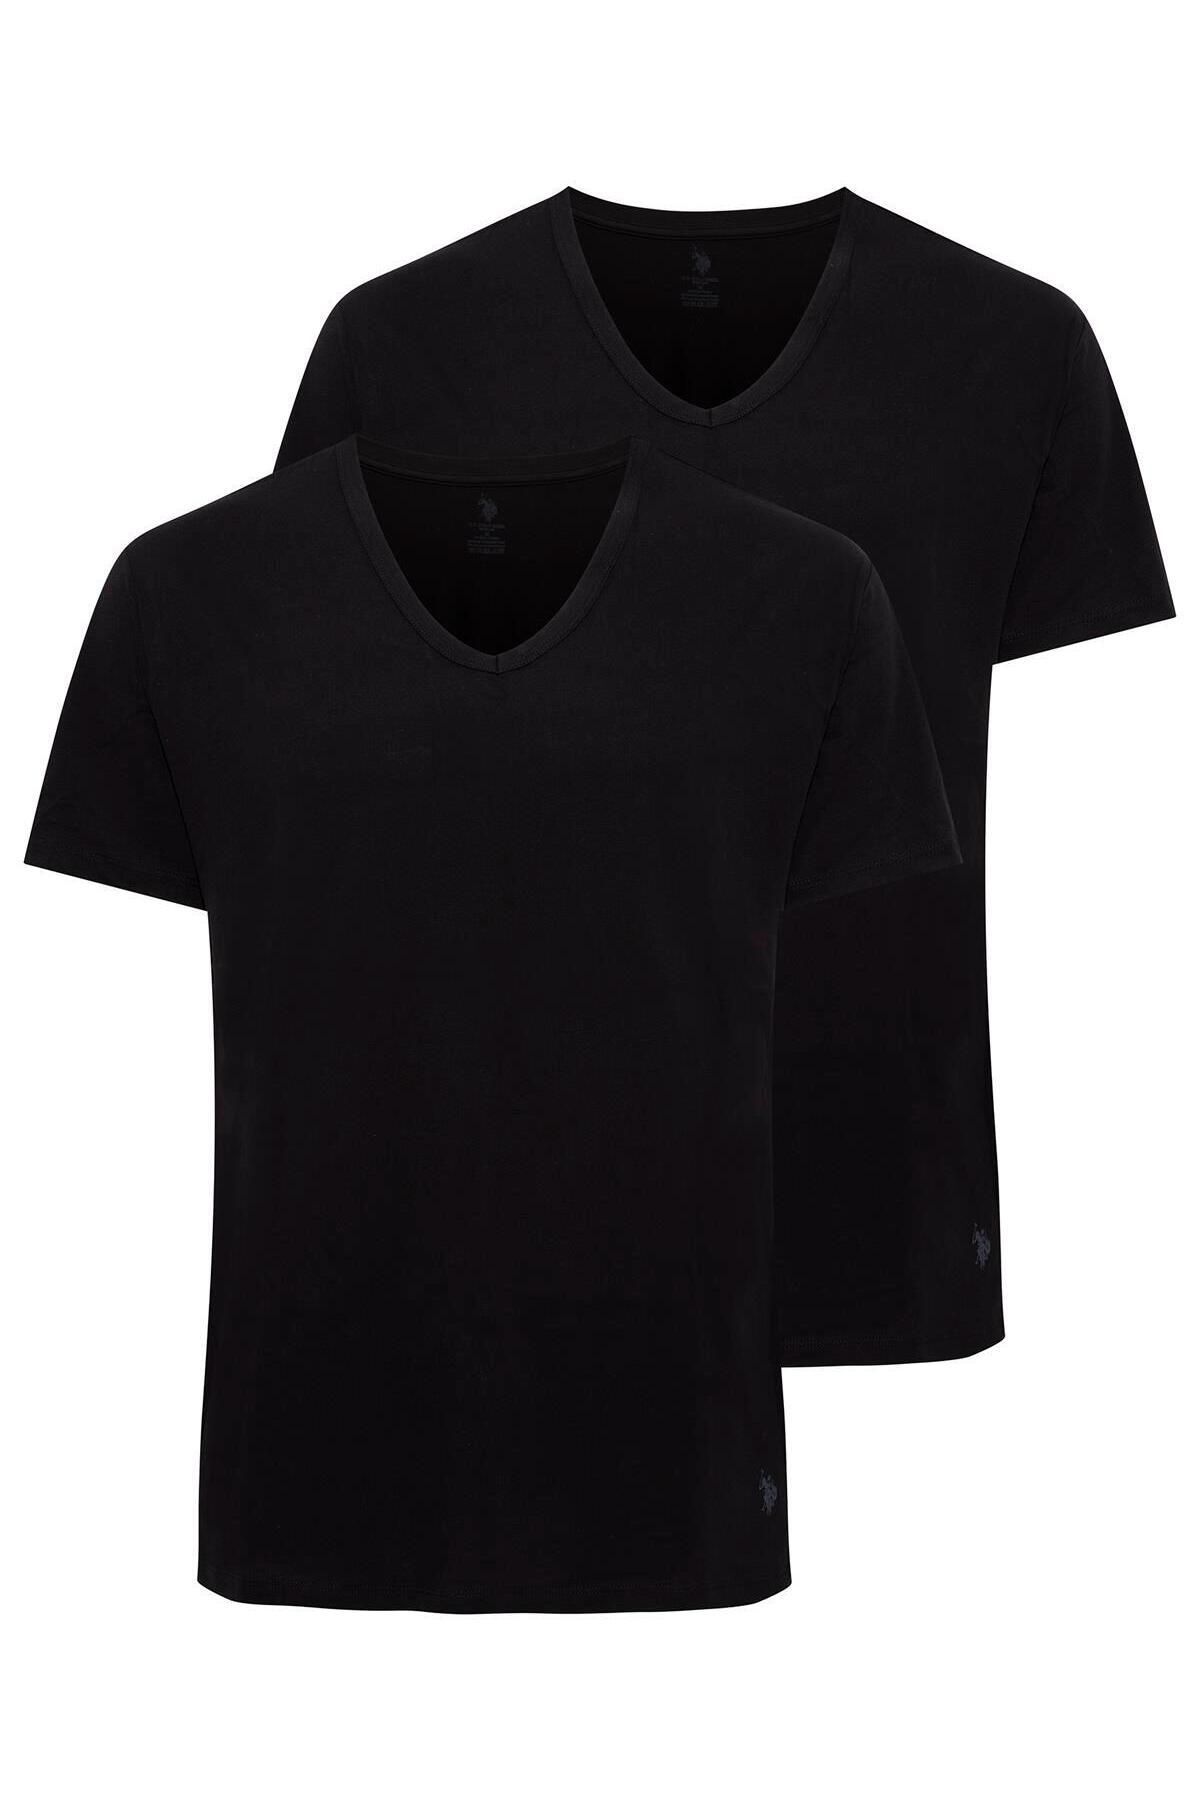 U.S. Polo Assn. - Erkek Battal Siyah 2 Li V Yaka T-shirt 90001